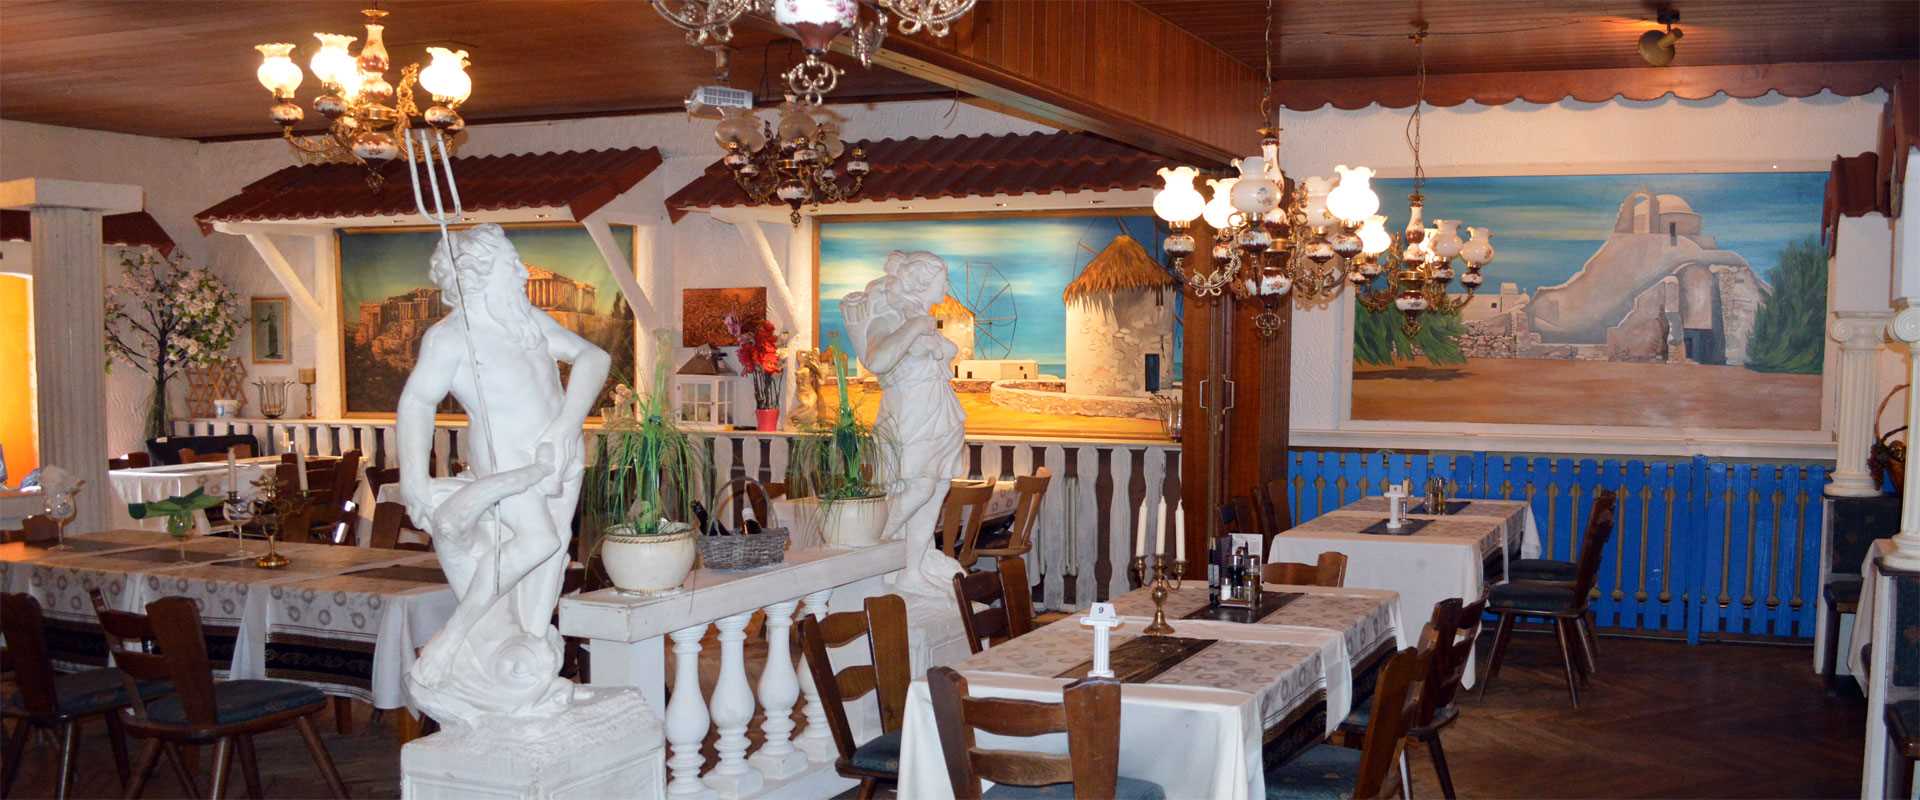 Griechishes Restaurant-Taverne Alt Athen in Rodgau-Rollwald0